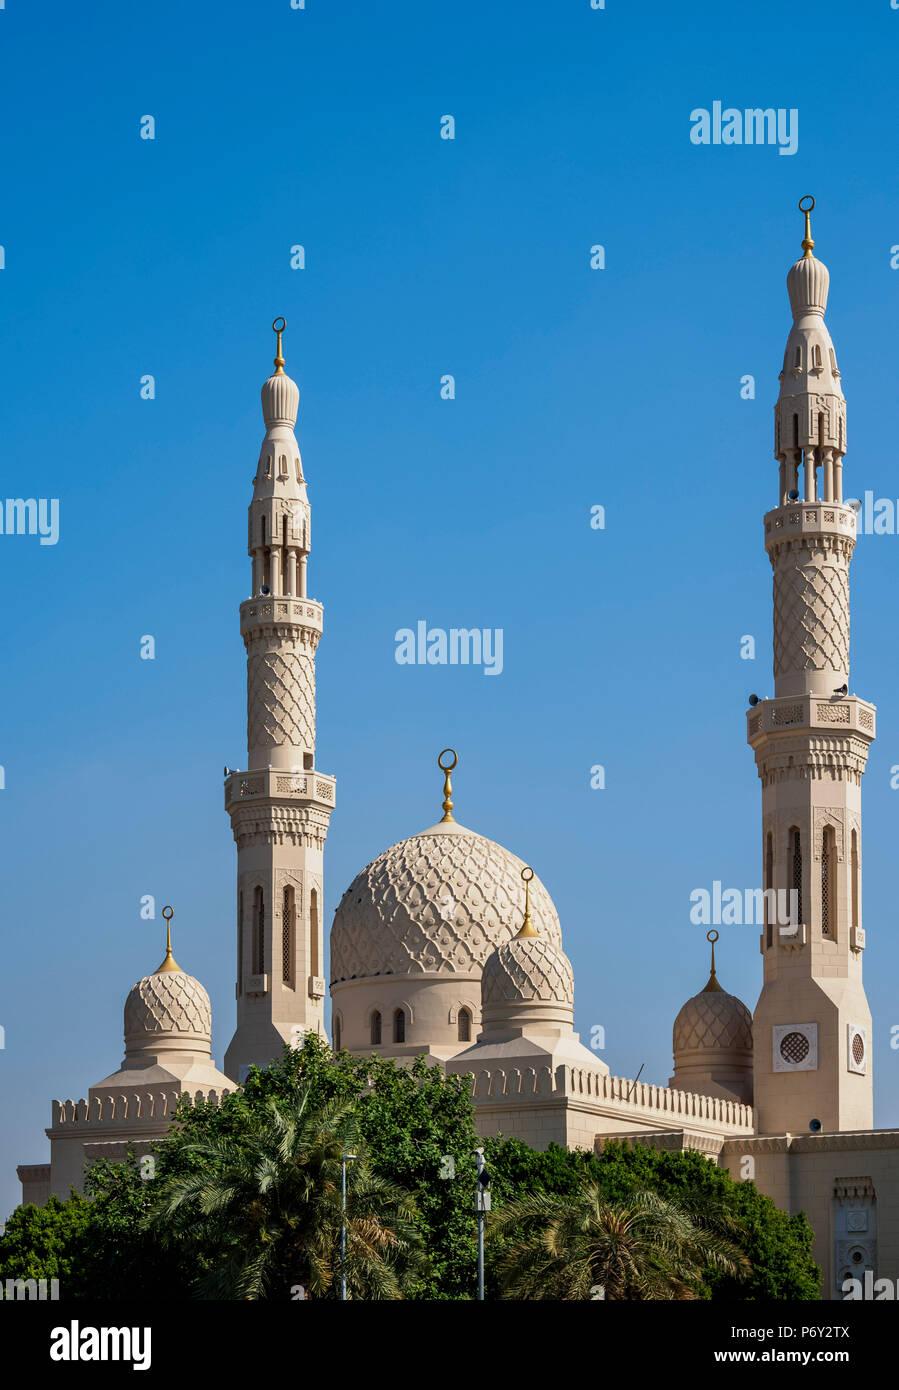 Jumeirah Mosque, Dubai, United Arab Emirates Stock Photo